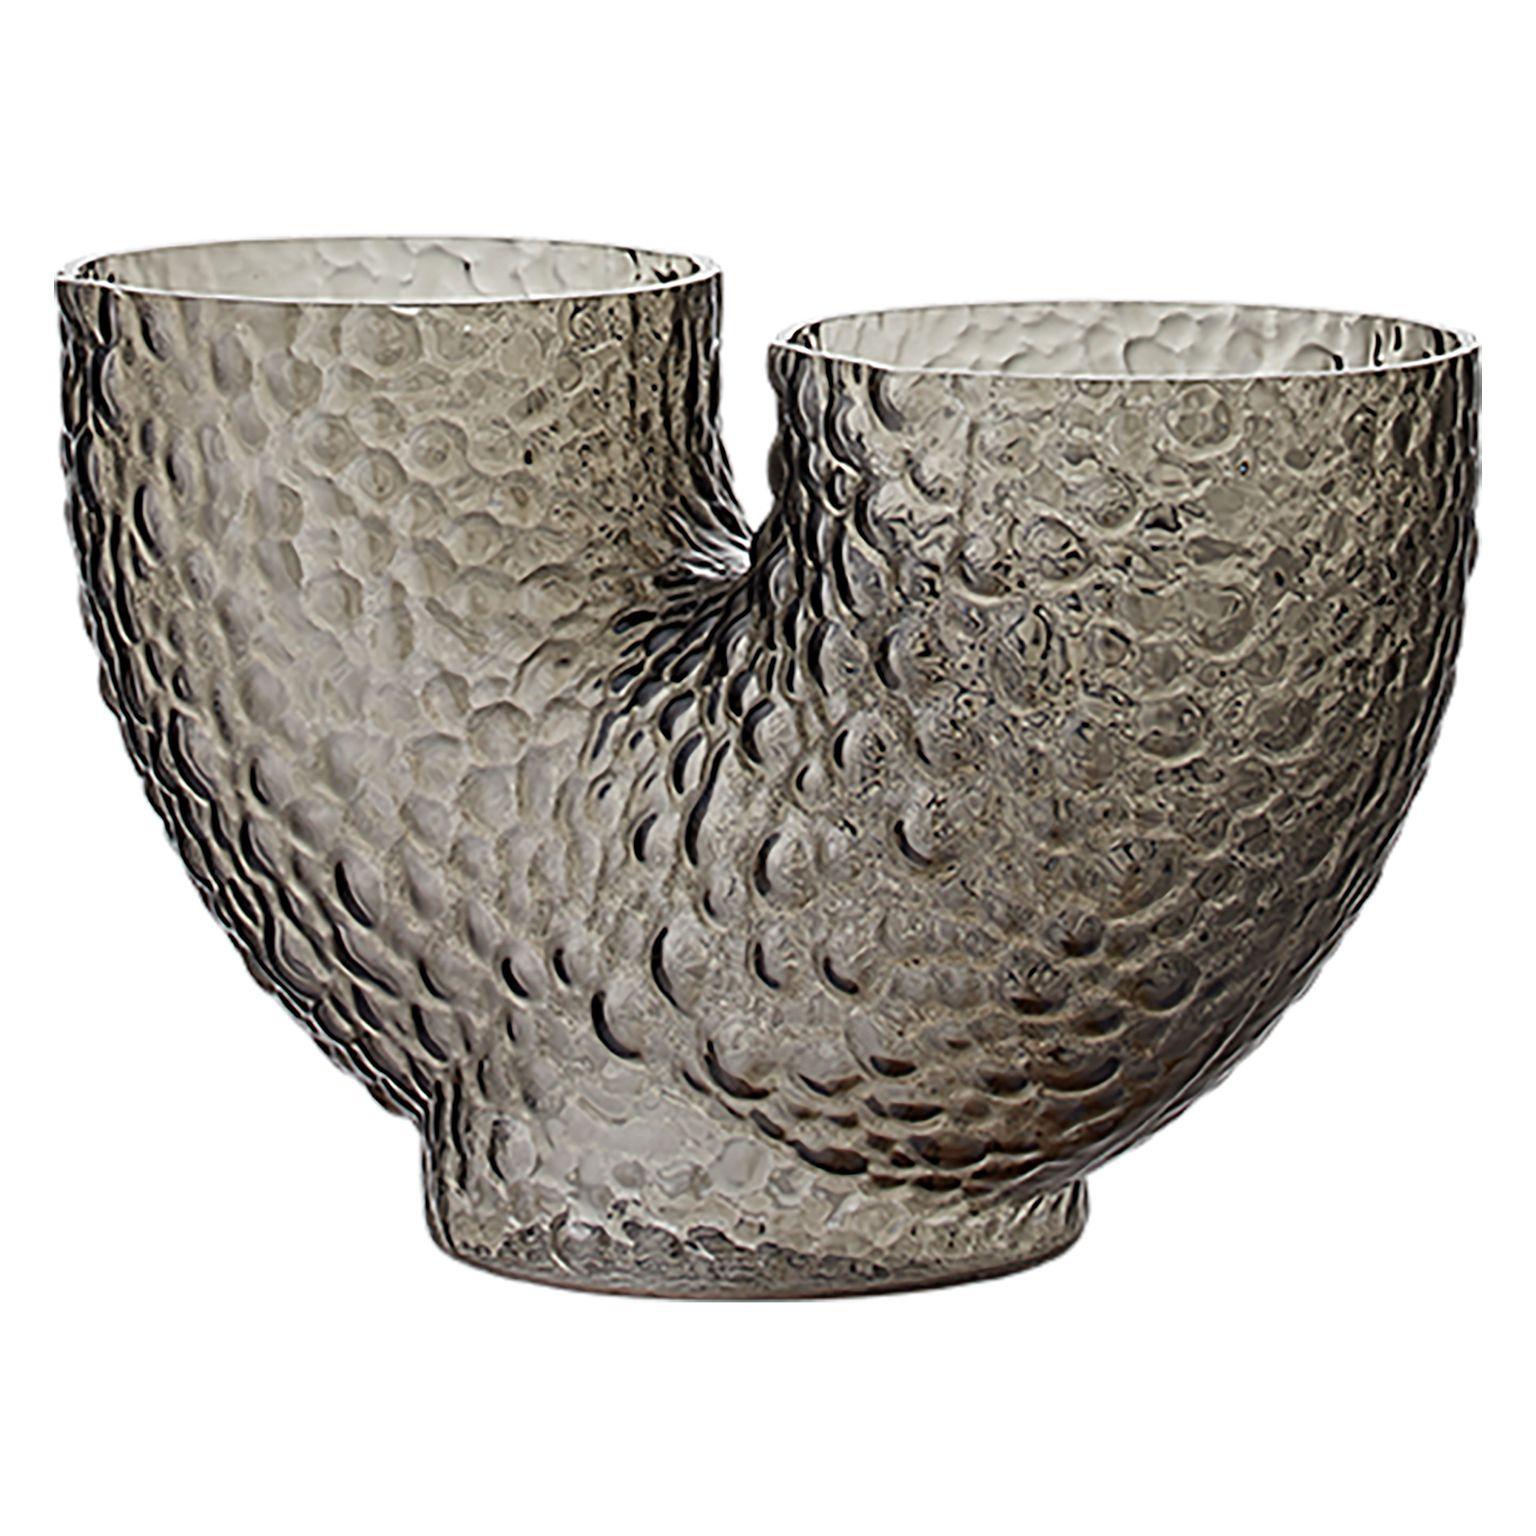 Vase contemporain en verre bas
Dimensions : L 34 x L 14 x H 19 CM
MATERIAL : Verre soufflé 

Ces vases sont fabriqués en verre soufflé à la bouche, ce qui rend chaque vase unique, exclusif et différent des autres. Ils sont un excellent exemple de la